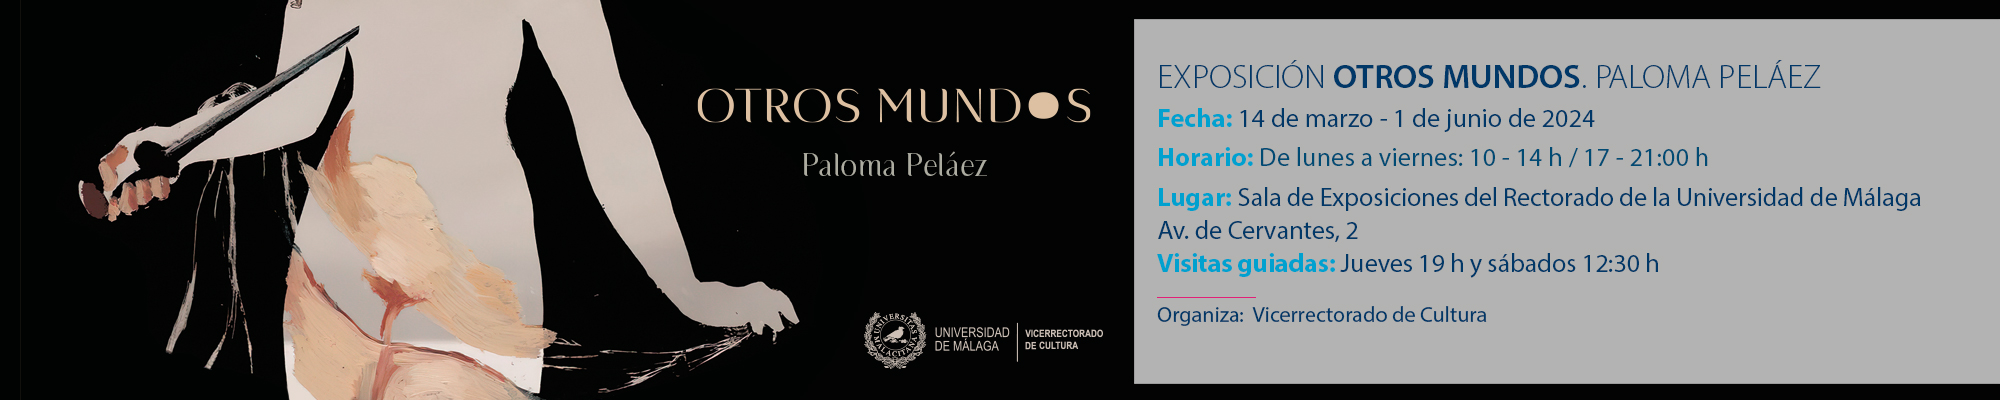 OTROS MUNDOS. Paloma Peláez. Del 14 de marzo al 1 de junio de 2024  Sala de exposiciones del Rectorado